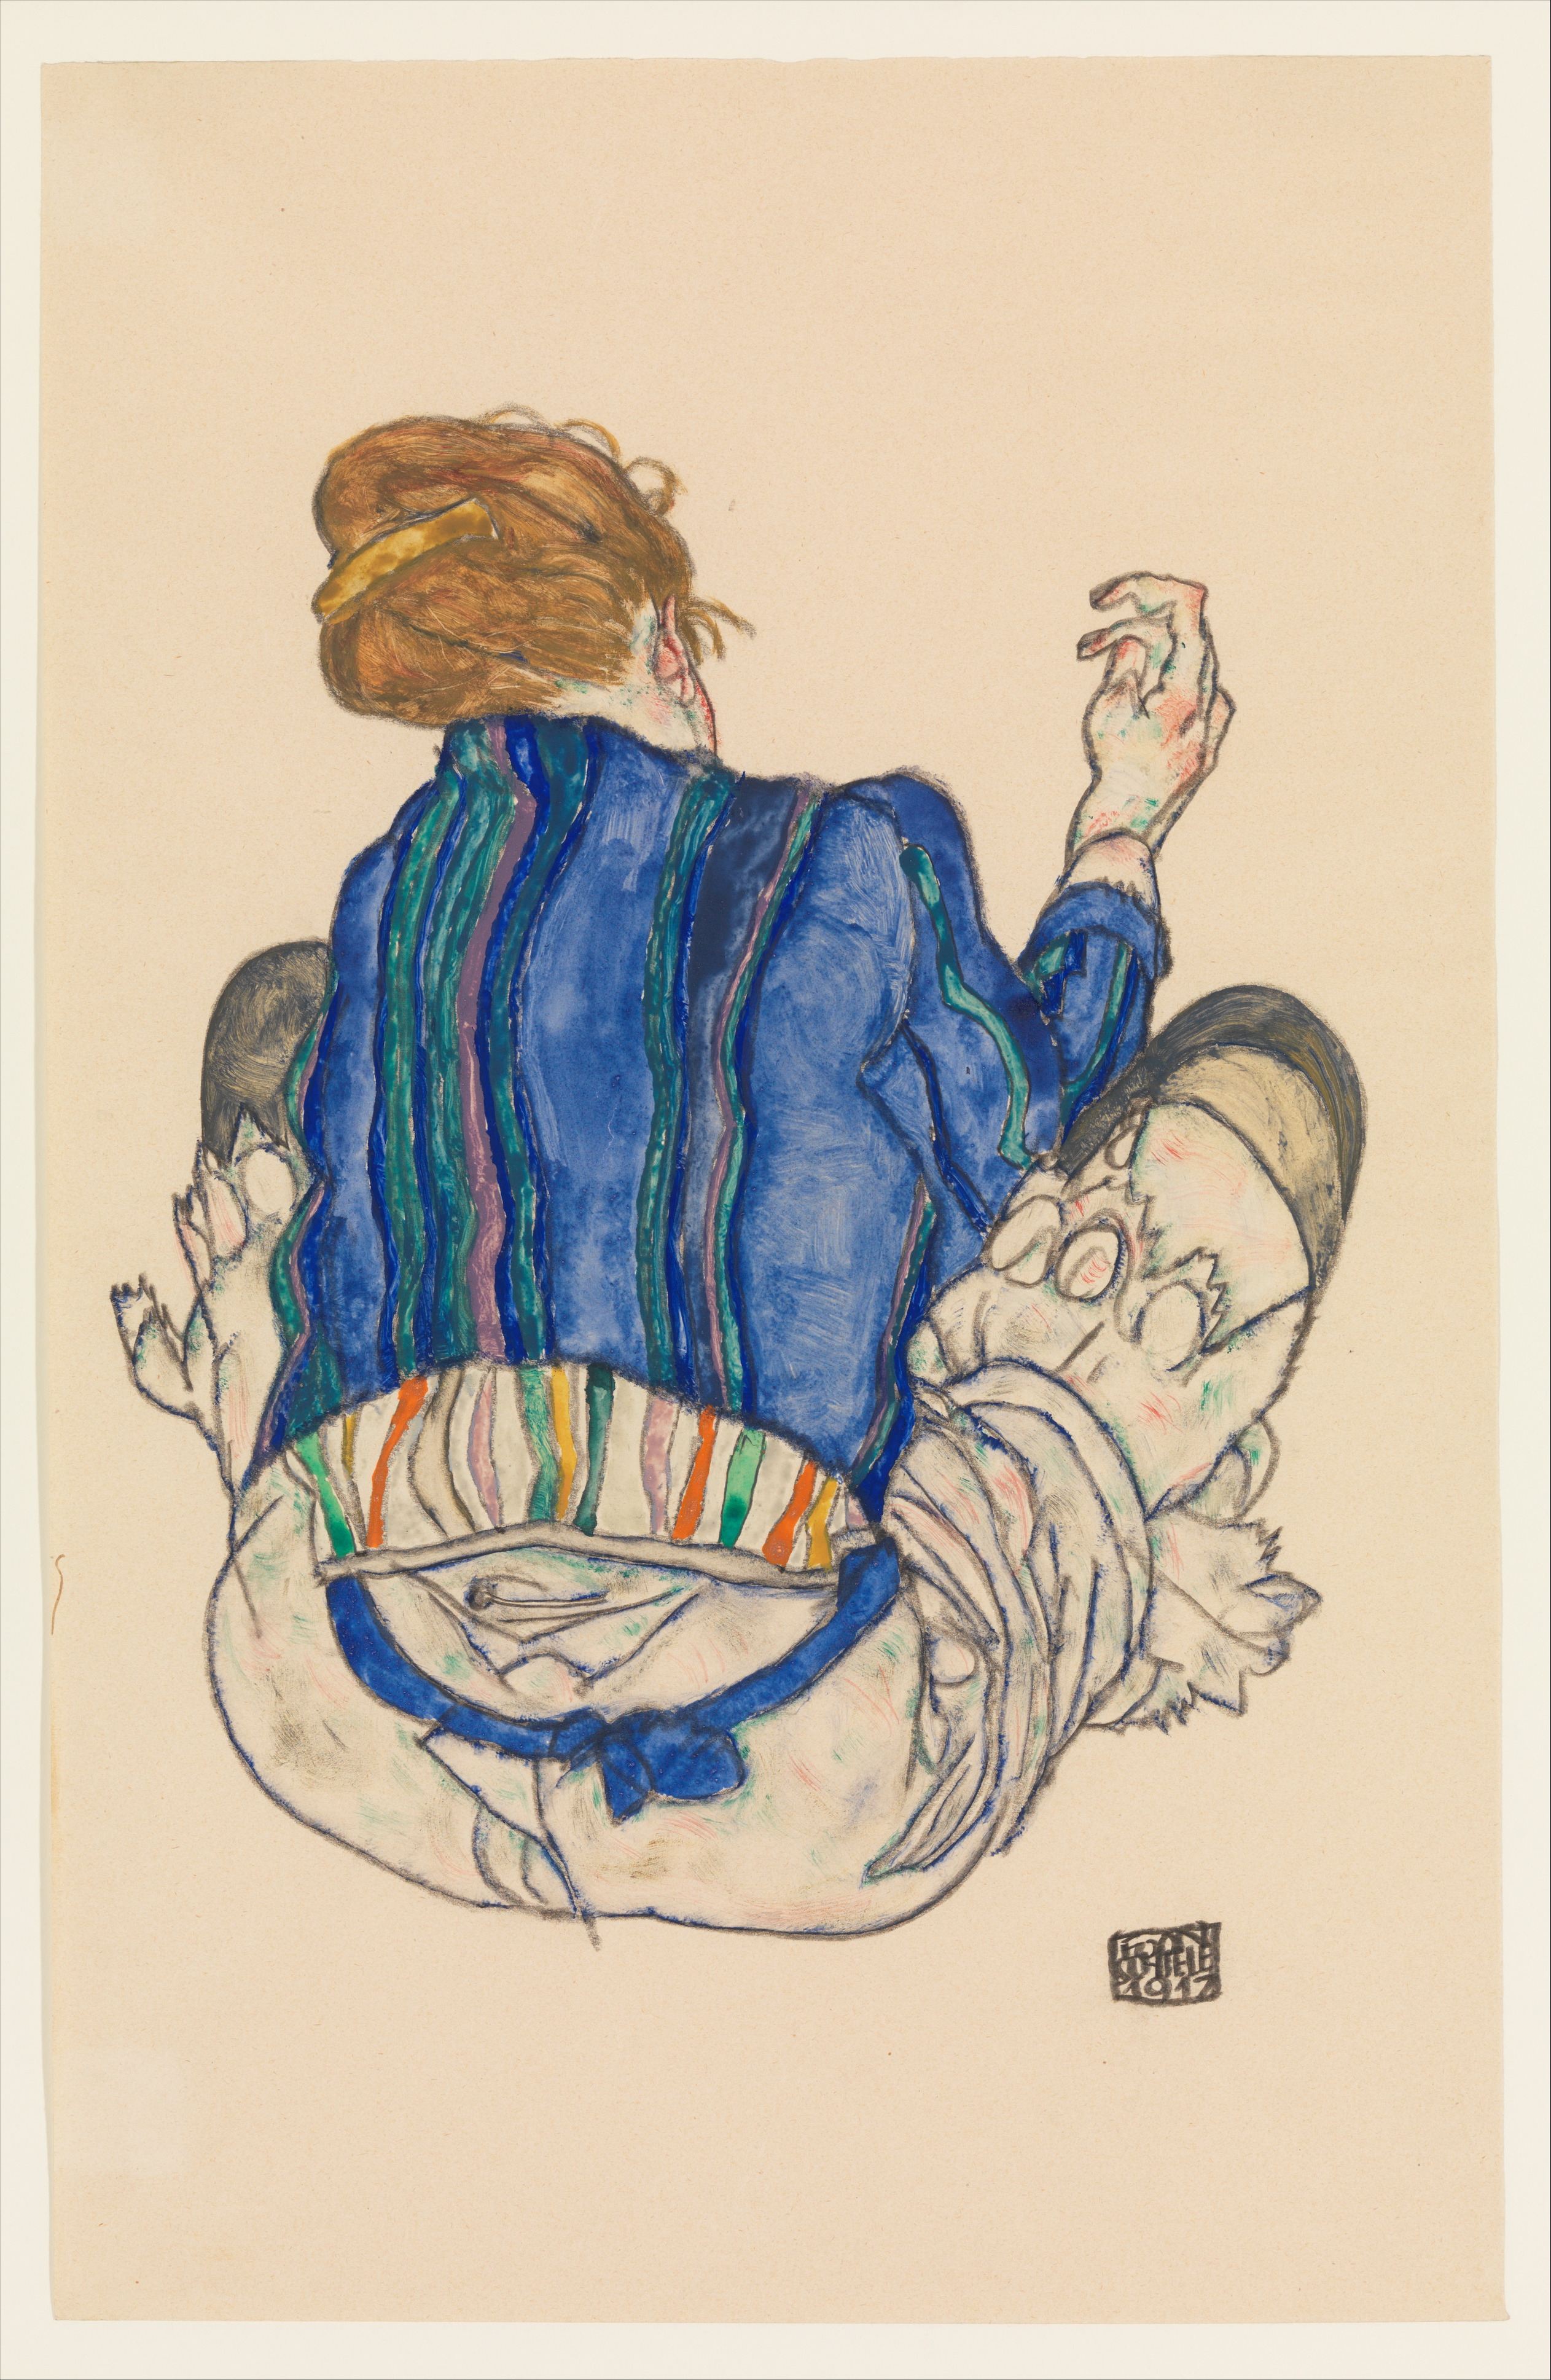 Sedící žena, pohled zezadu by Egon Schiele - 1917 - 46.4 x 29.8 cm 